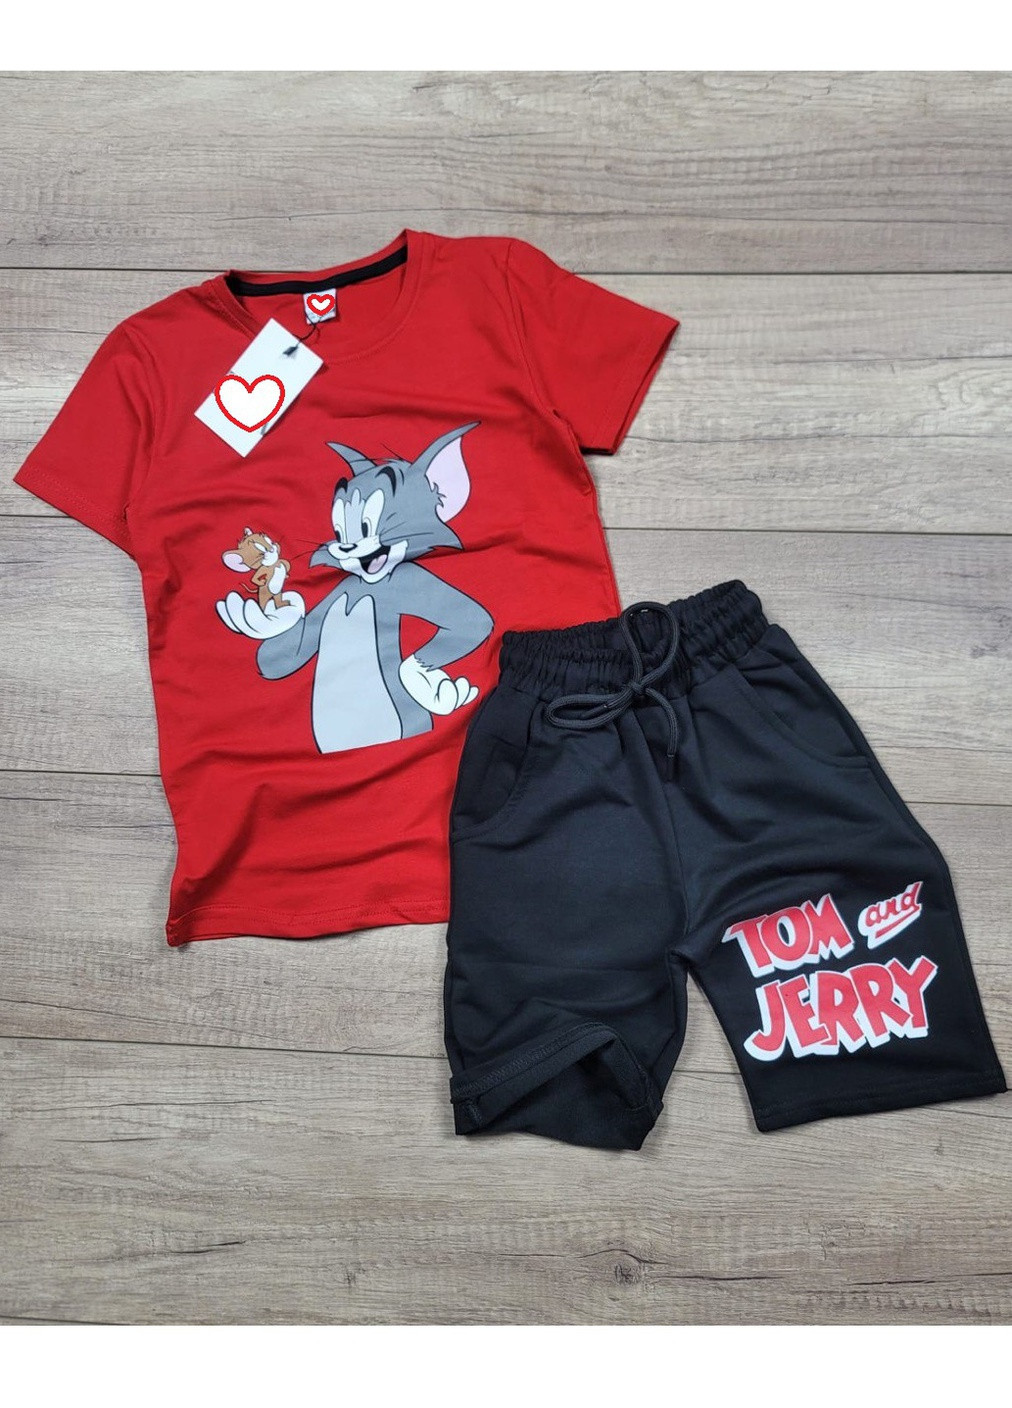 Красный летний костюм легкий (футболка, шорты) том и джерри (tom and jerry) Disney